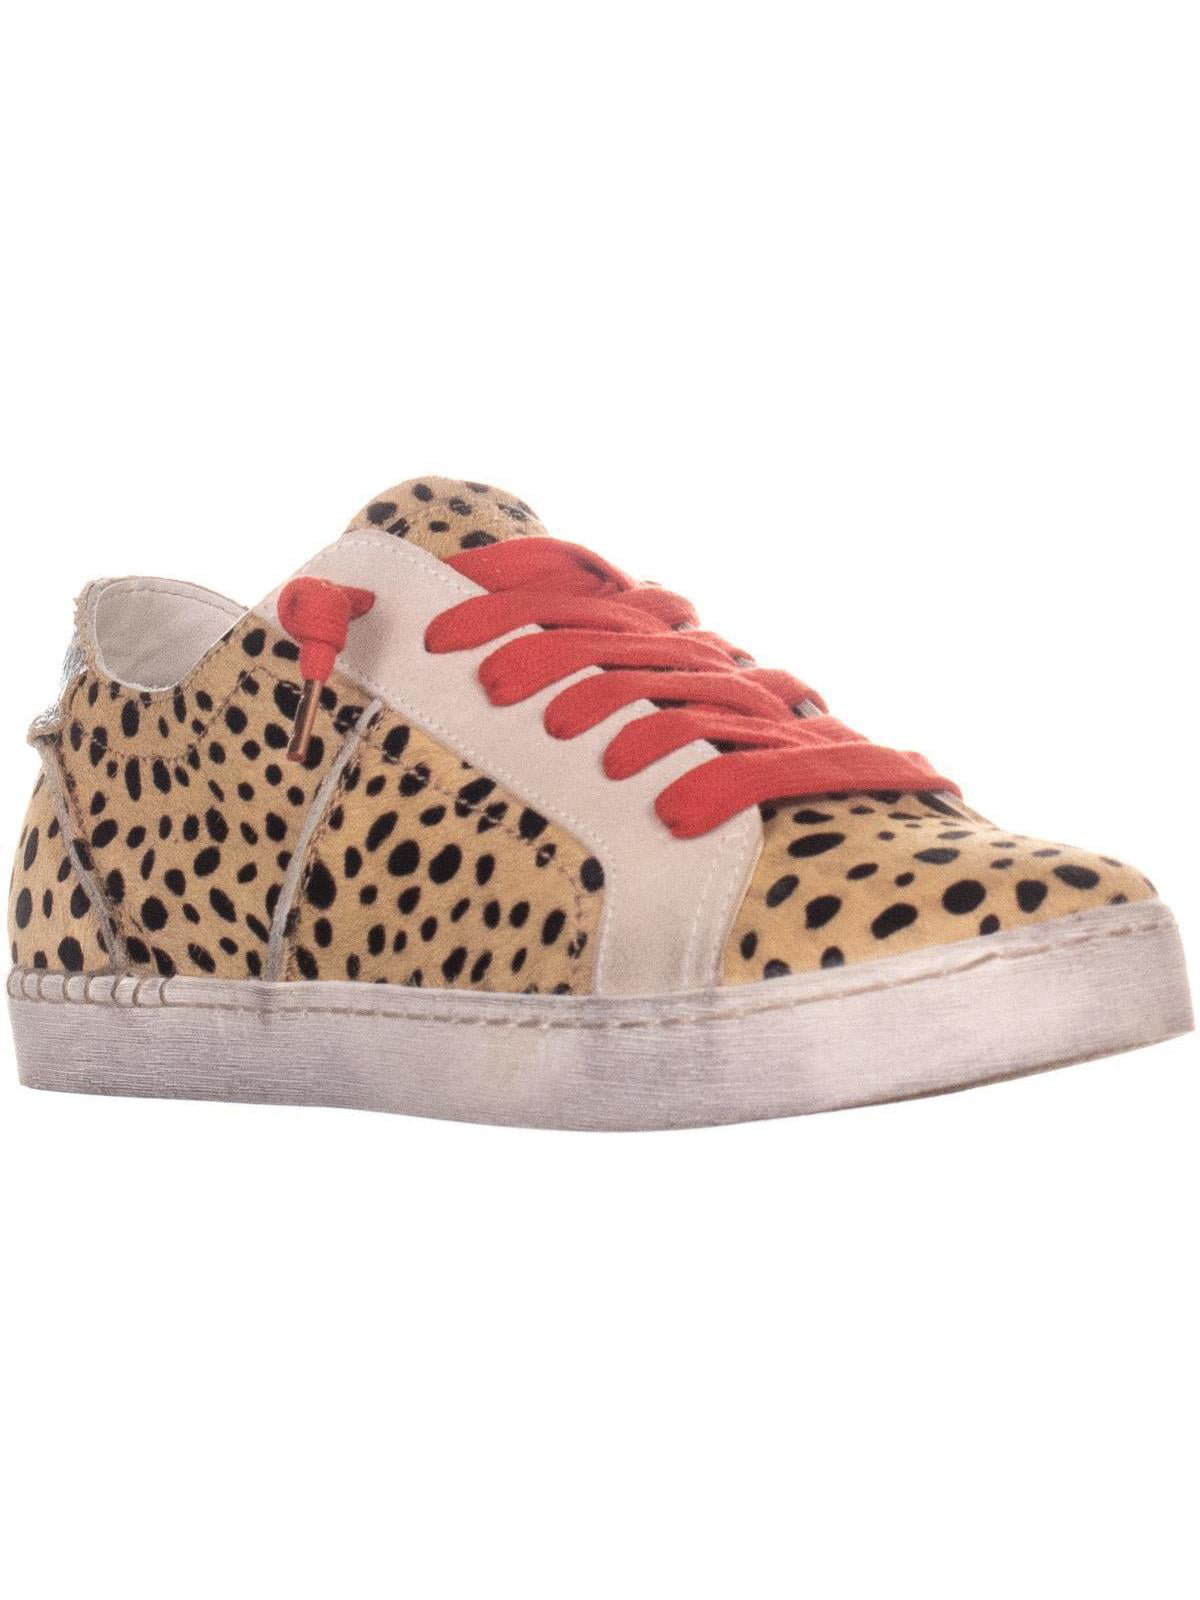 dolce vita leopard sneakers